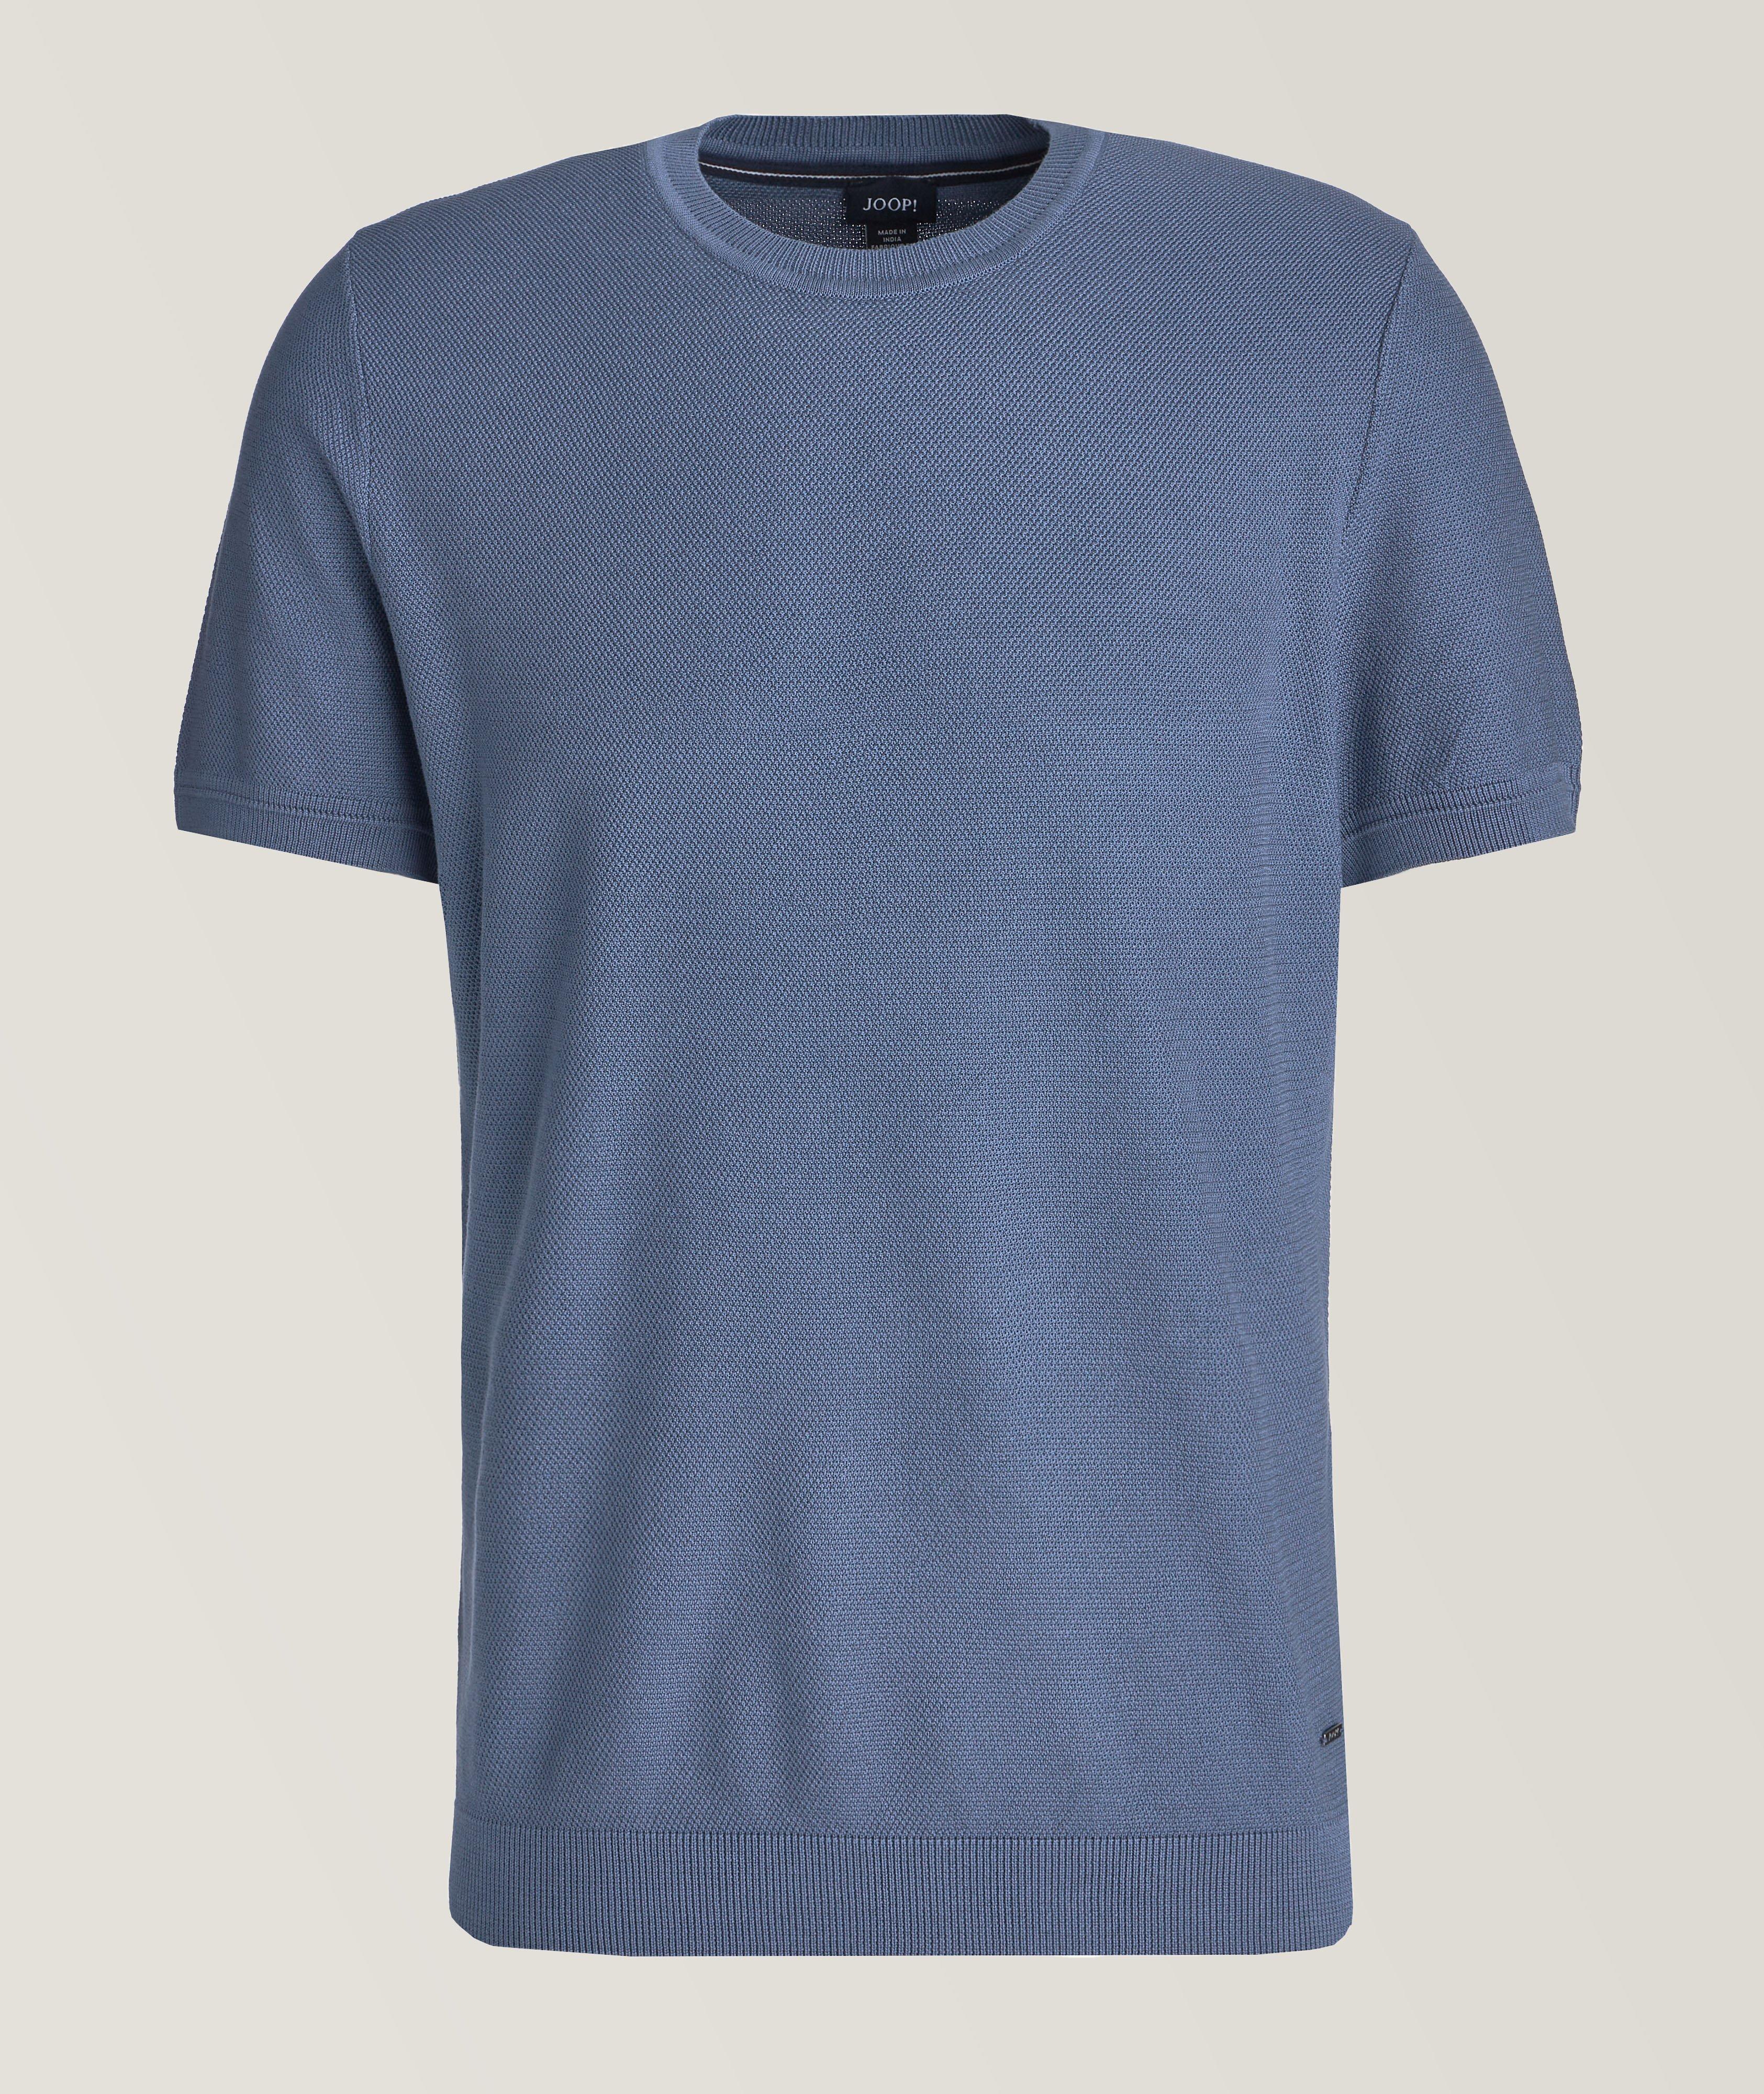 T-shirt Valdrio en coton texturé image 0